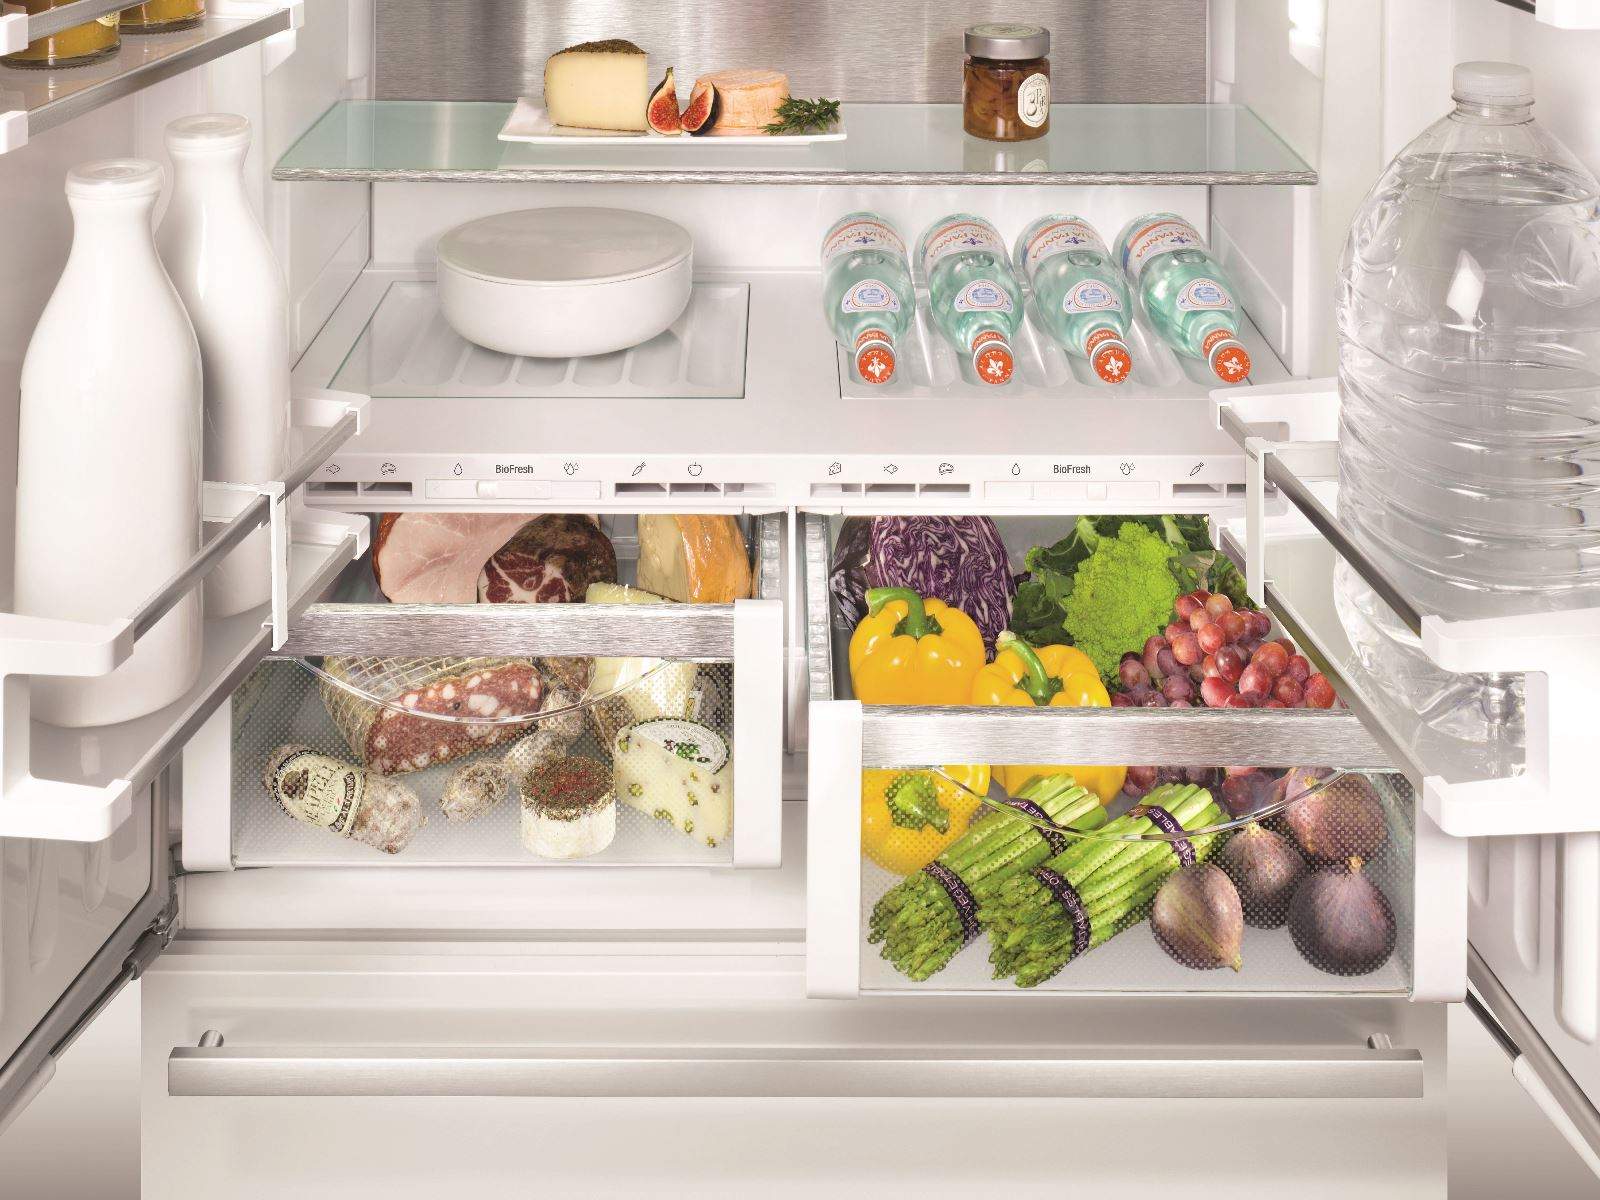 Холодильник встраиваемый двухкамерный no frost. Холодильник Liebherr CBNES 6256. Либхер холодильник встраиваемый двухкамерный. Liebherr ECBN 6256 встраиваемый. Liebherr 6256 встраиваемый холодильник.